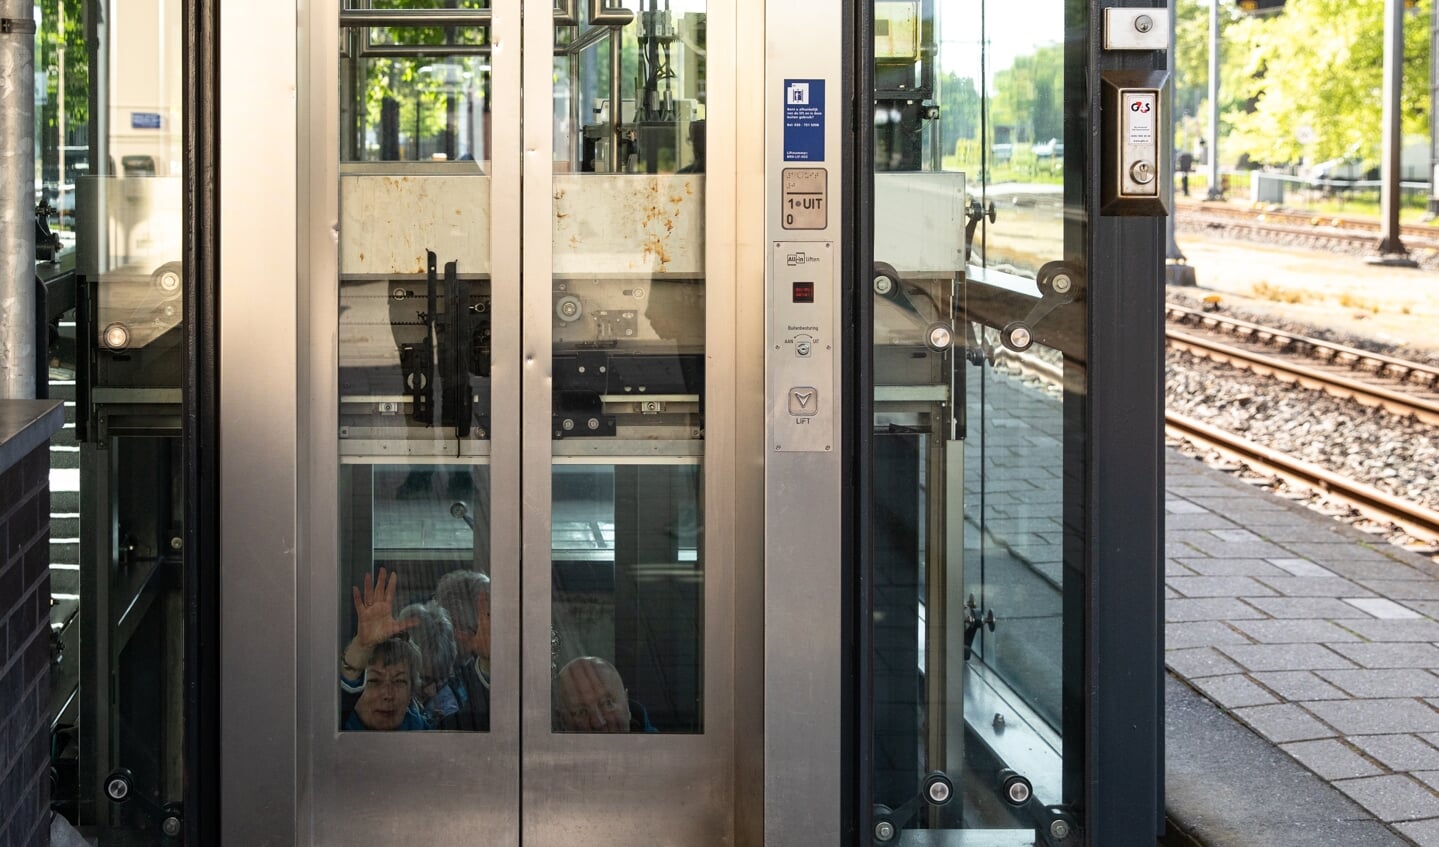 Vier passagiers zaten opgesloten in de lift op het station.